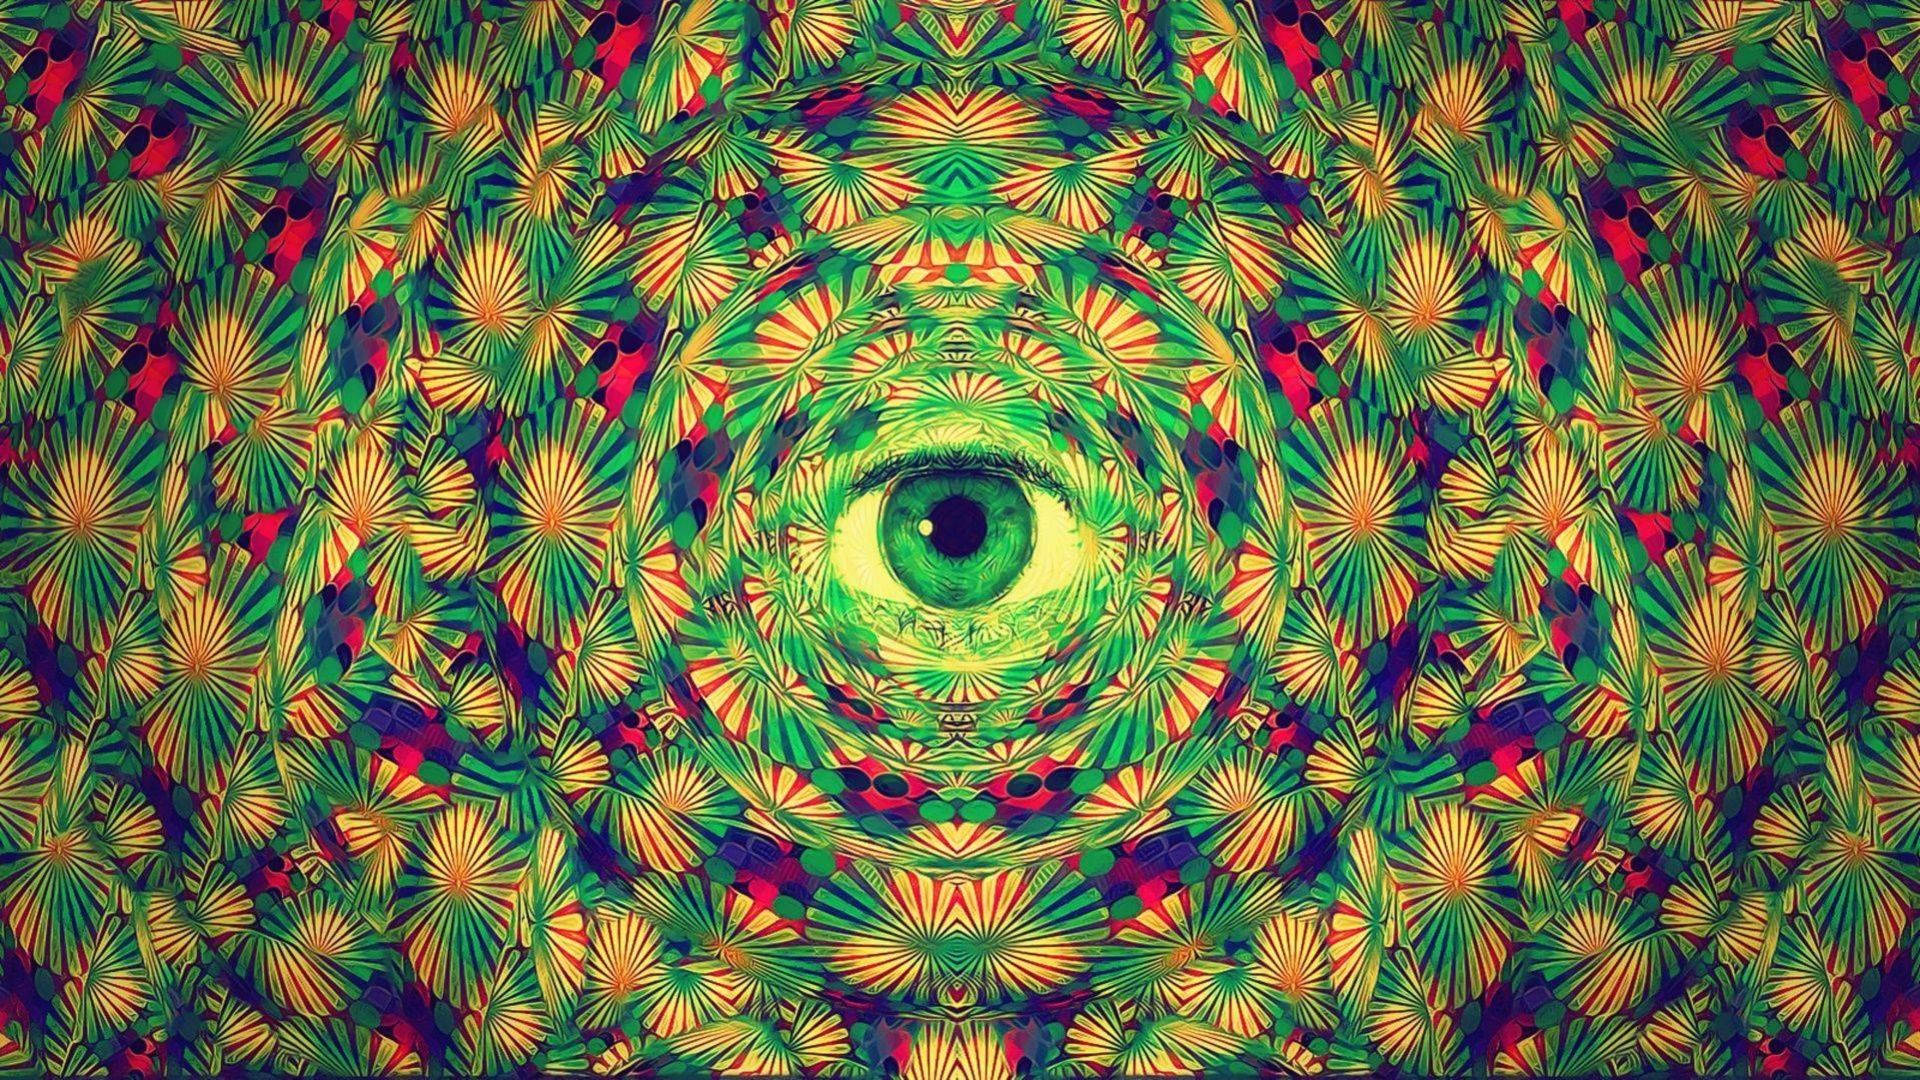 Starring Eyes In A Tie Dye Pattern Wallpaper